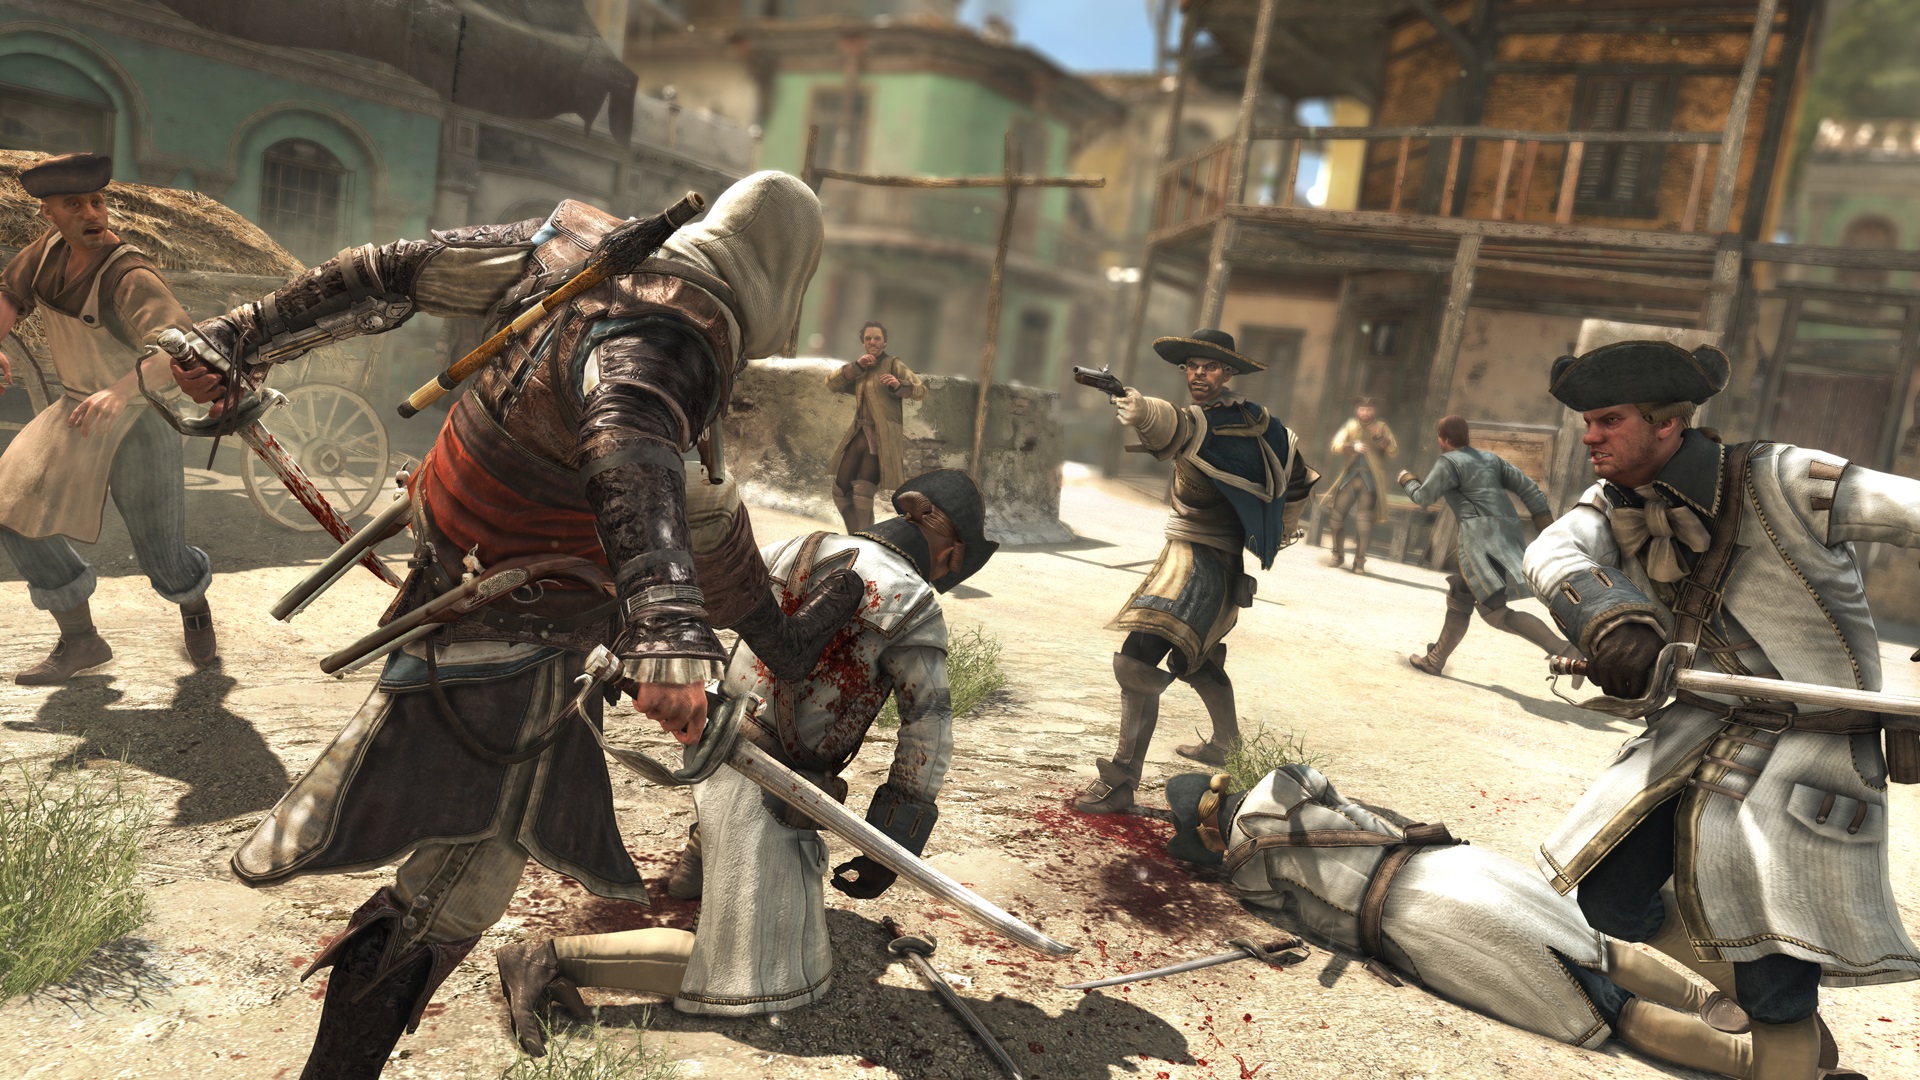 Assassin's Creed IV: Black Flag Kad situciu je mon vyriei bojom, obyajne bez postihov.